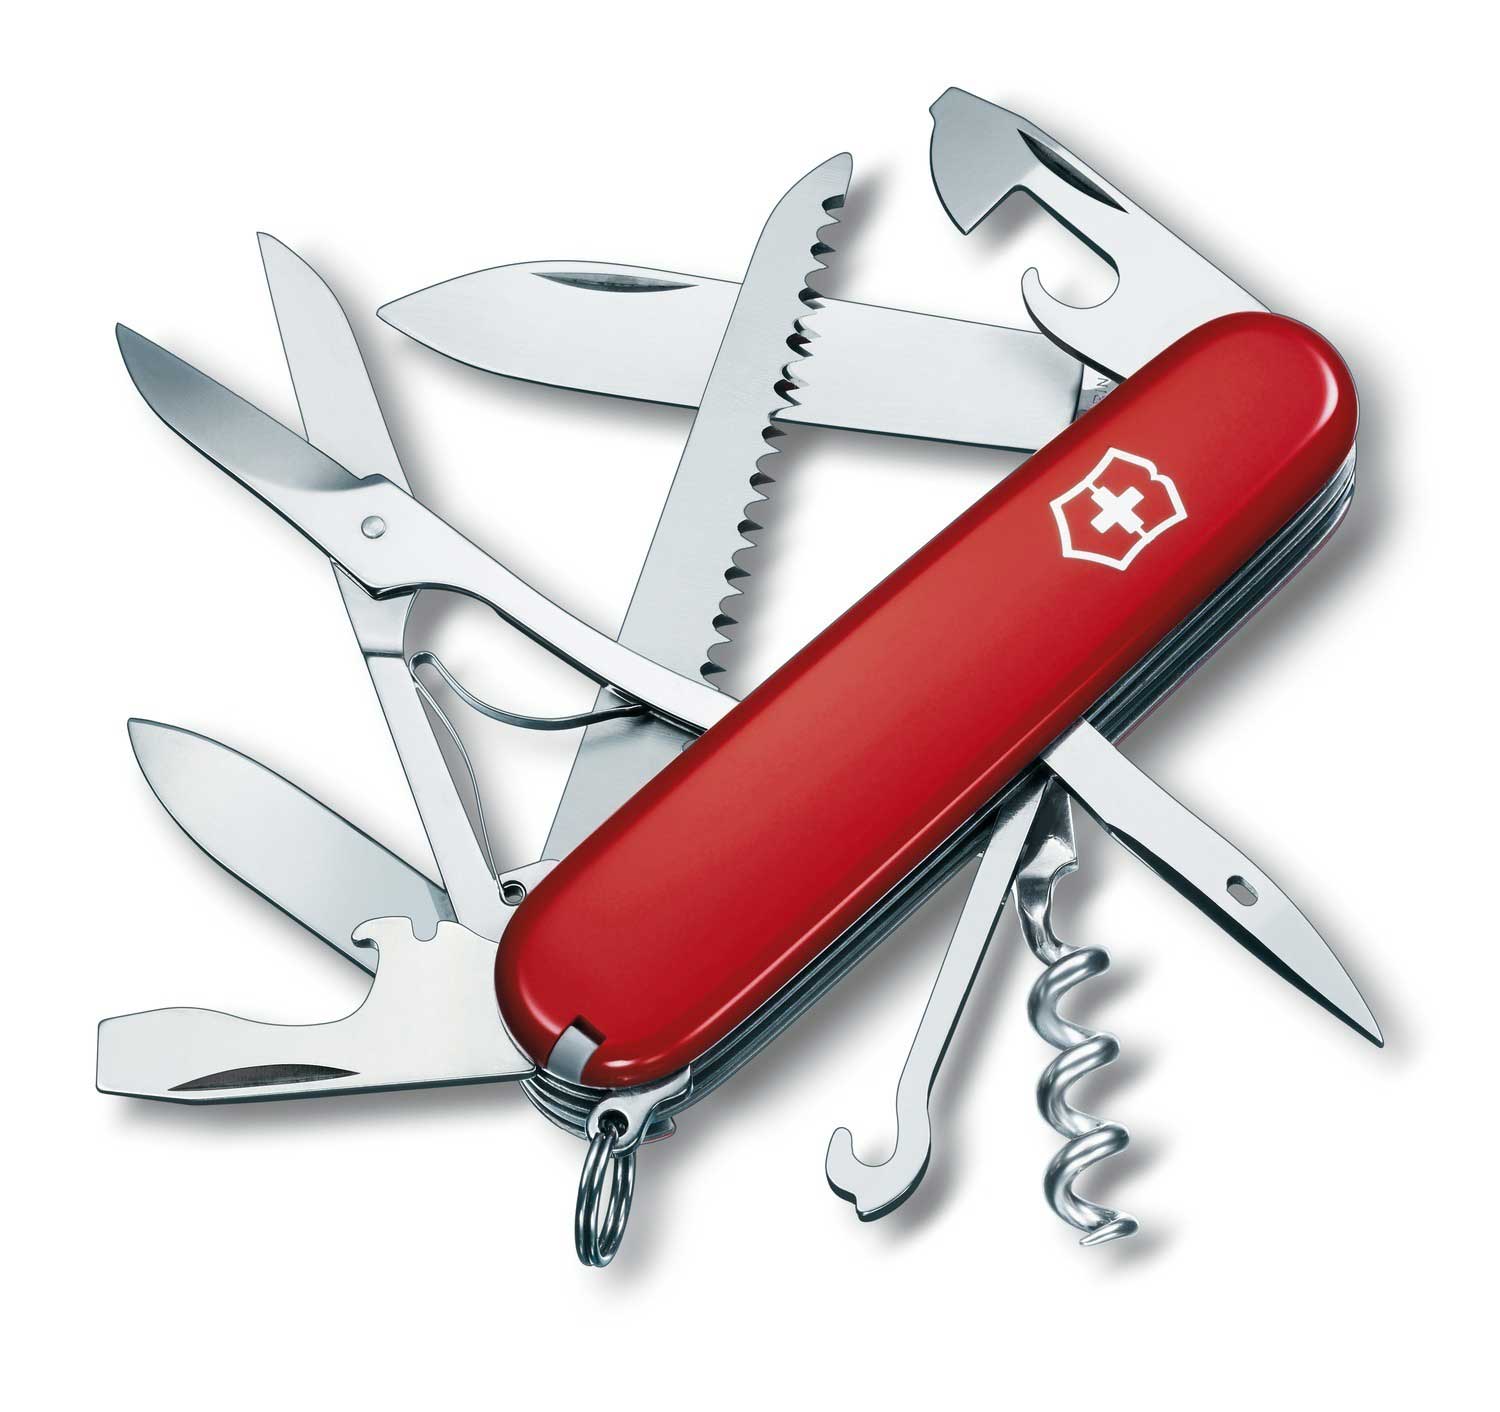 Нож Victorinox Huntsman, 91 мм, 15 функций, красный нож victorinox angler 91 мм 19 функций красный